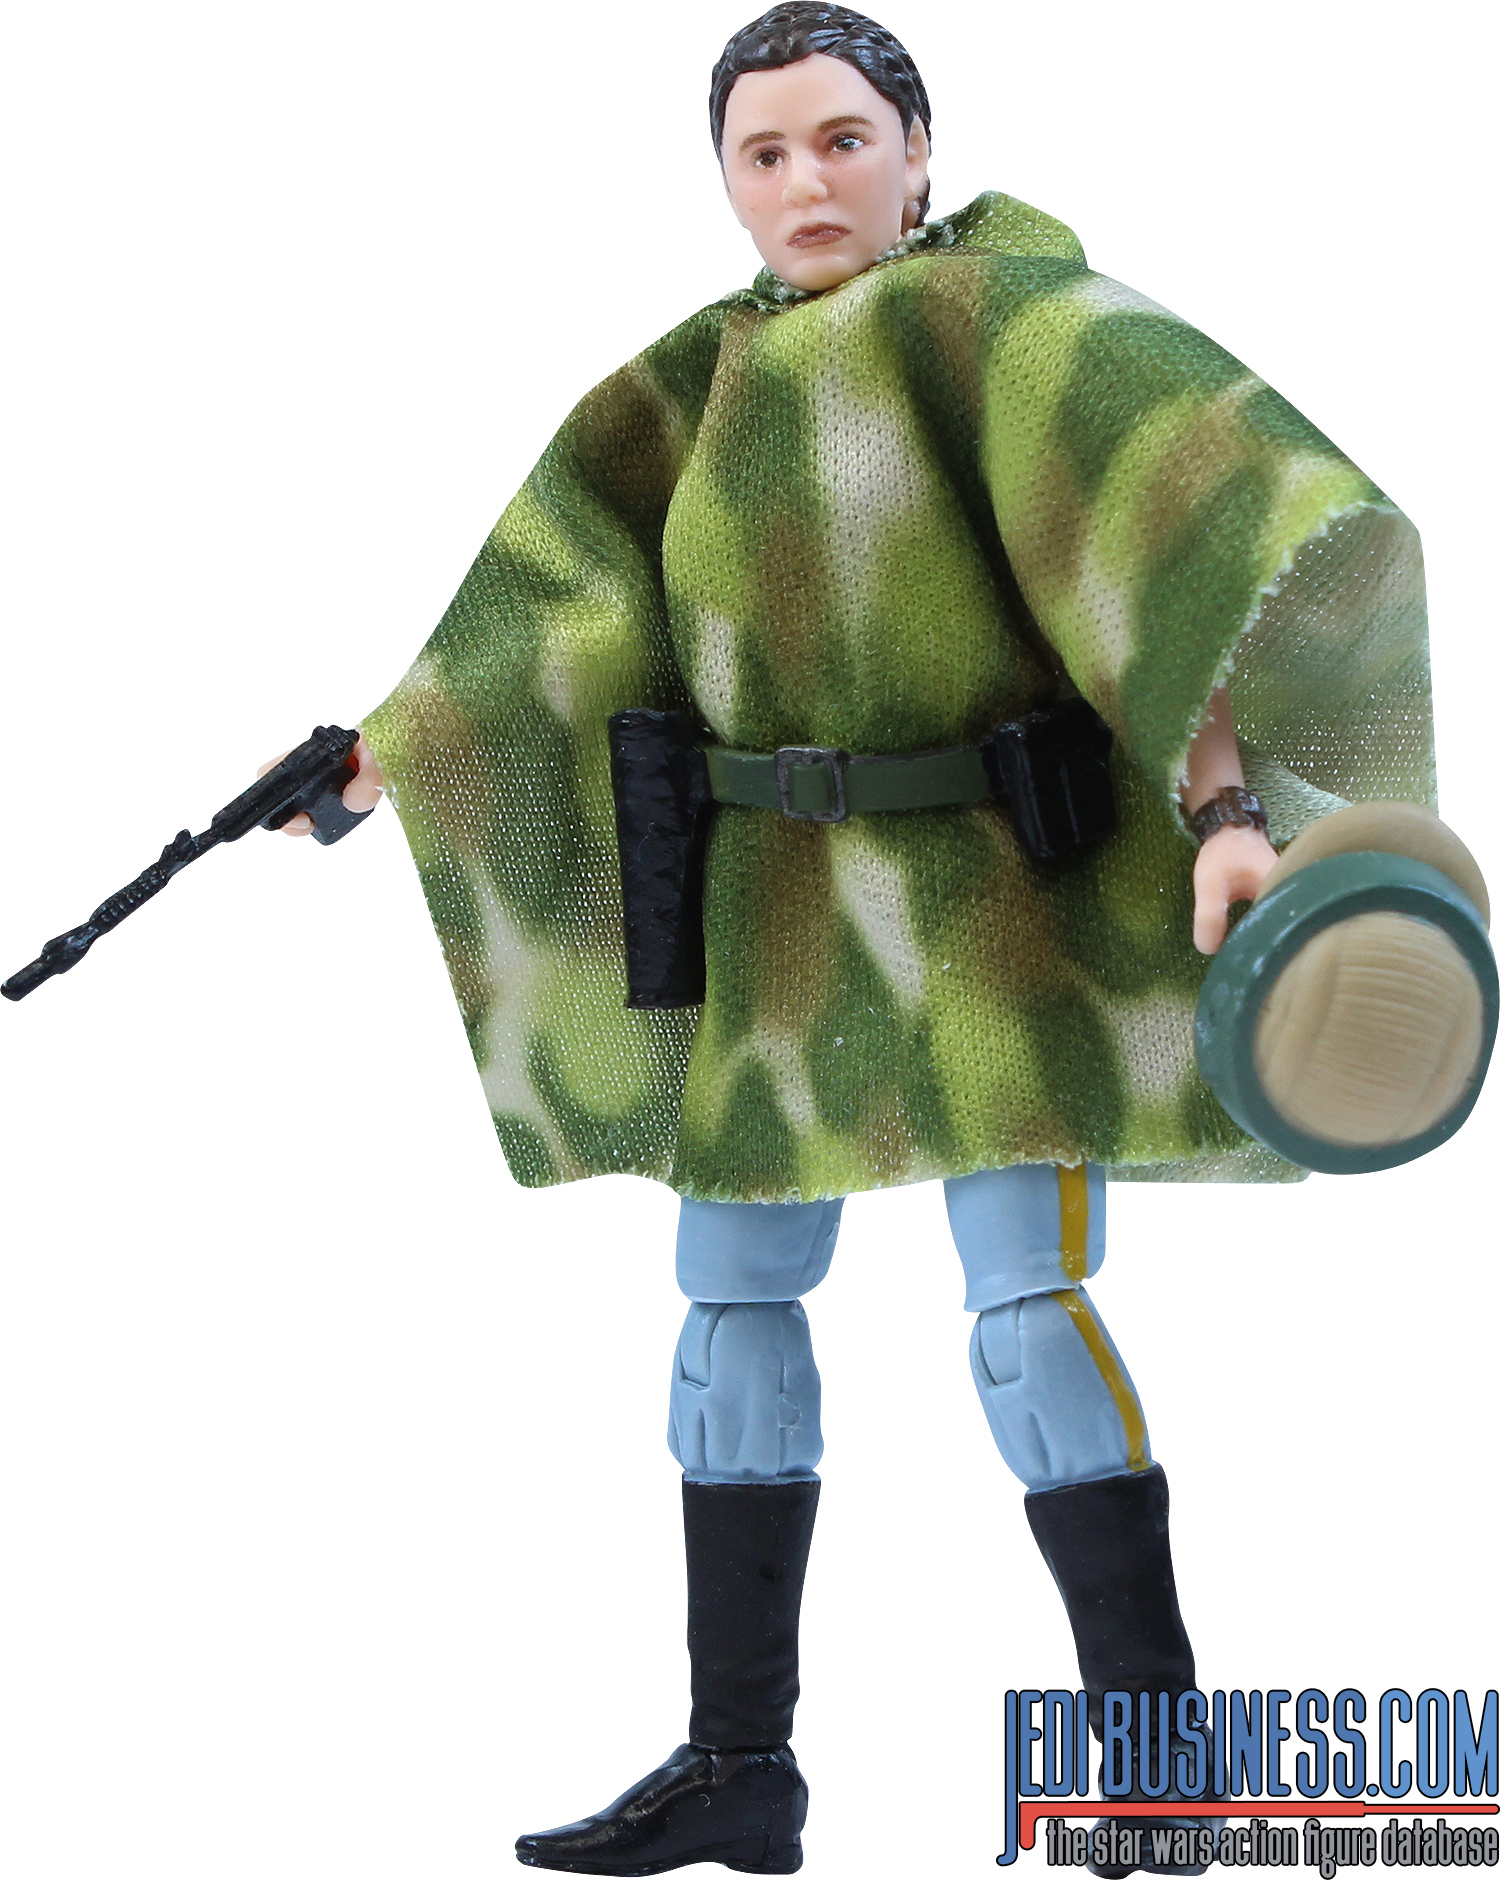 Princess Leia Organa Endor